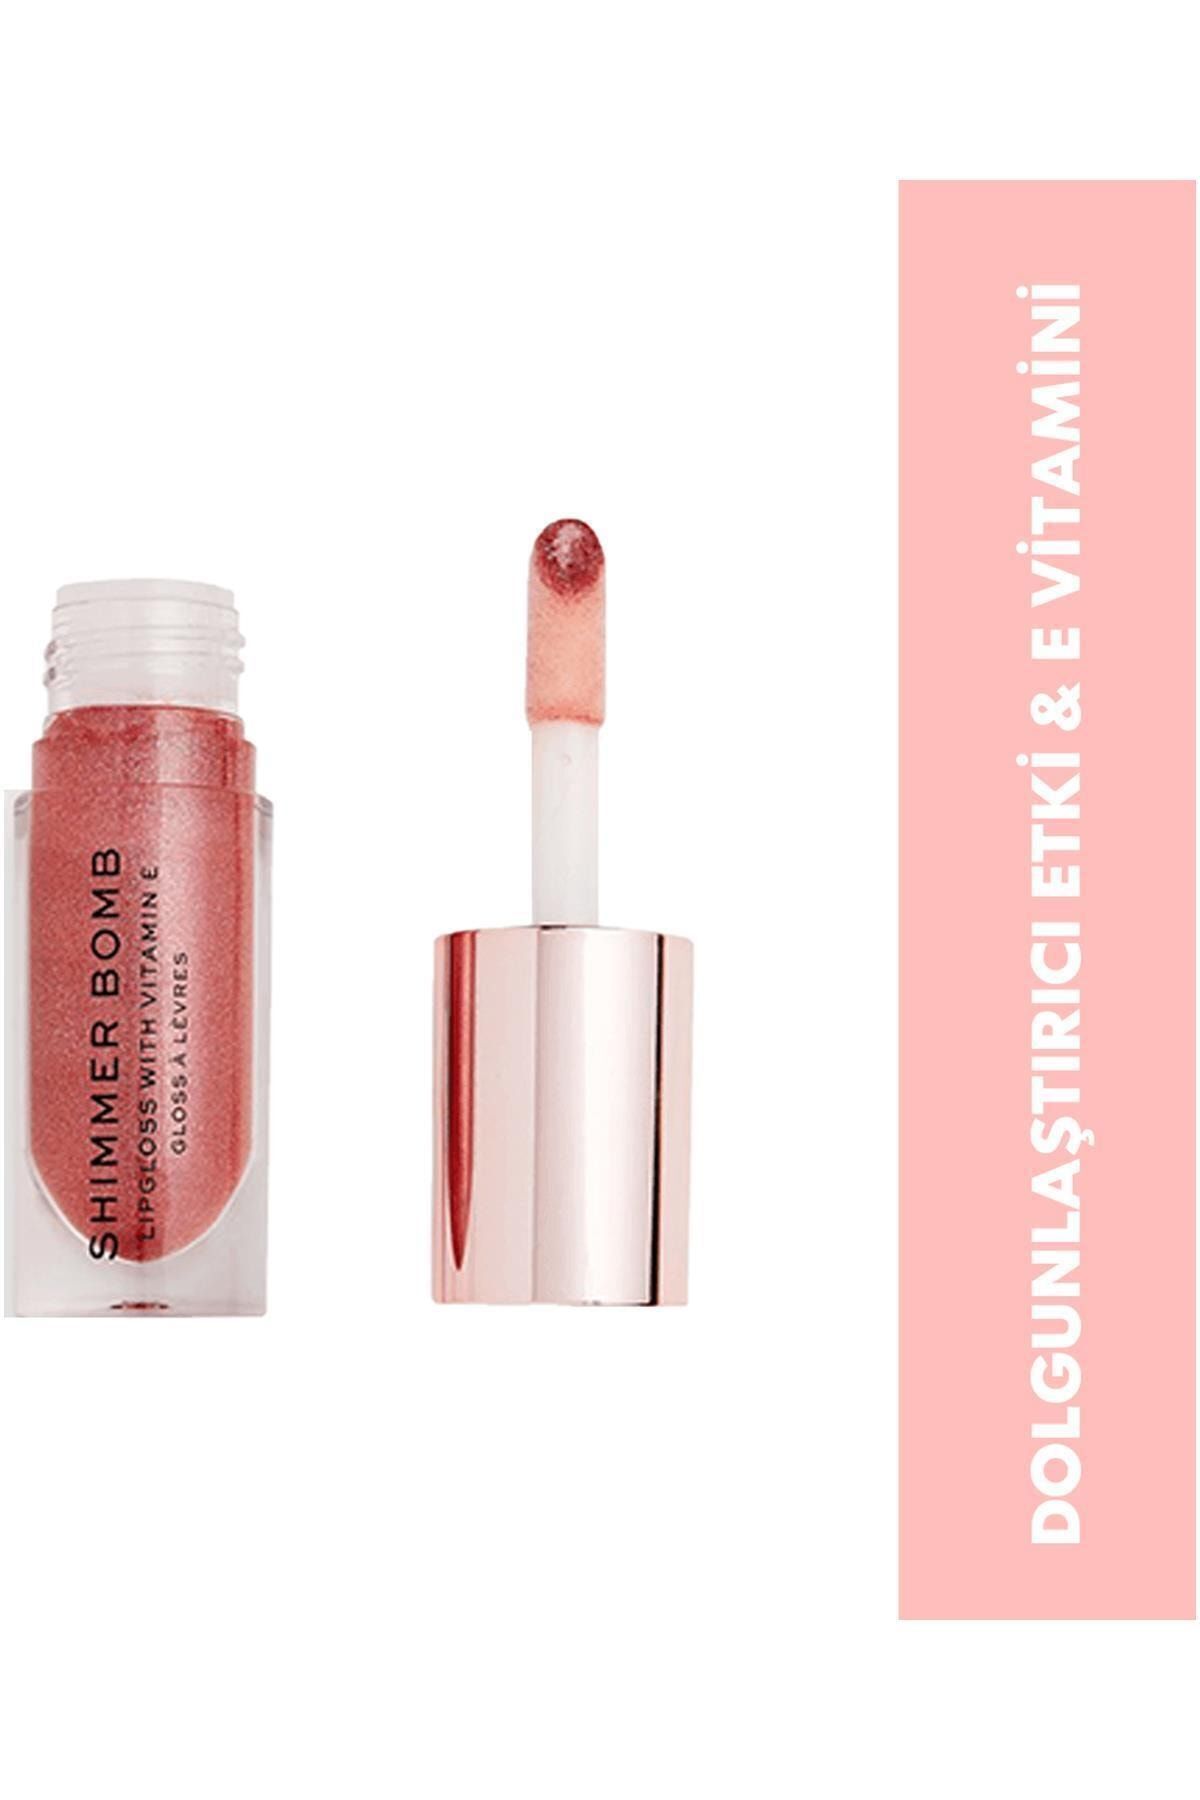 Revolution Marka: Shimmer Bomb Lip Gloss Distortion Kategori: Dudak Parlatıcısı